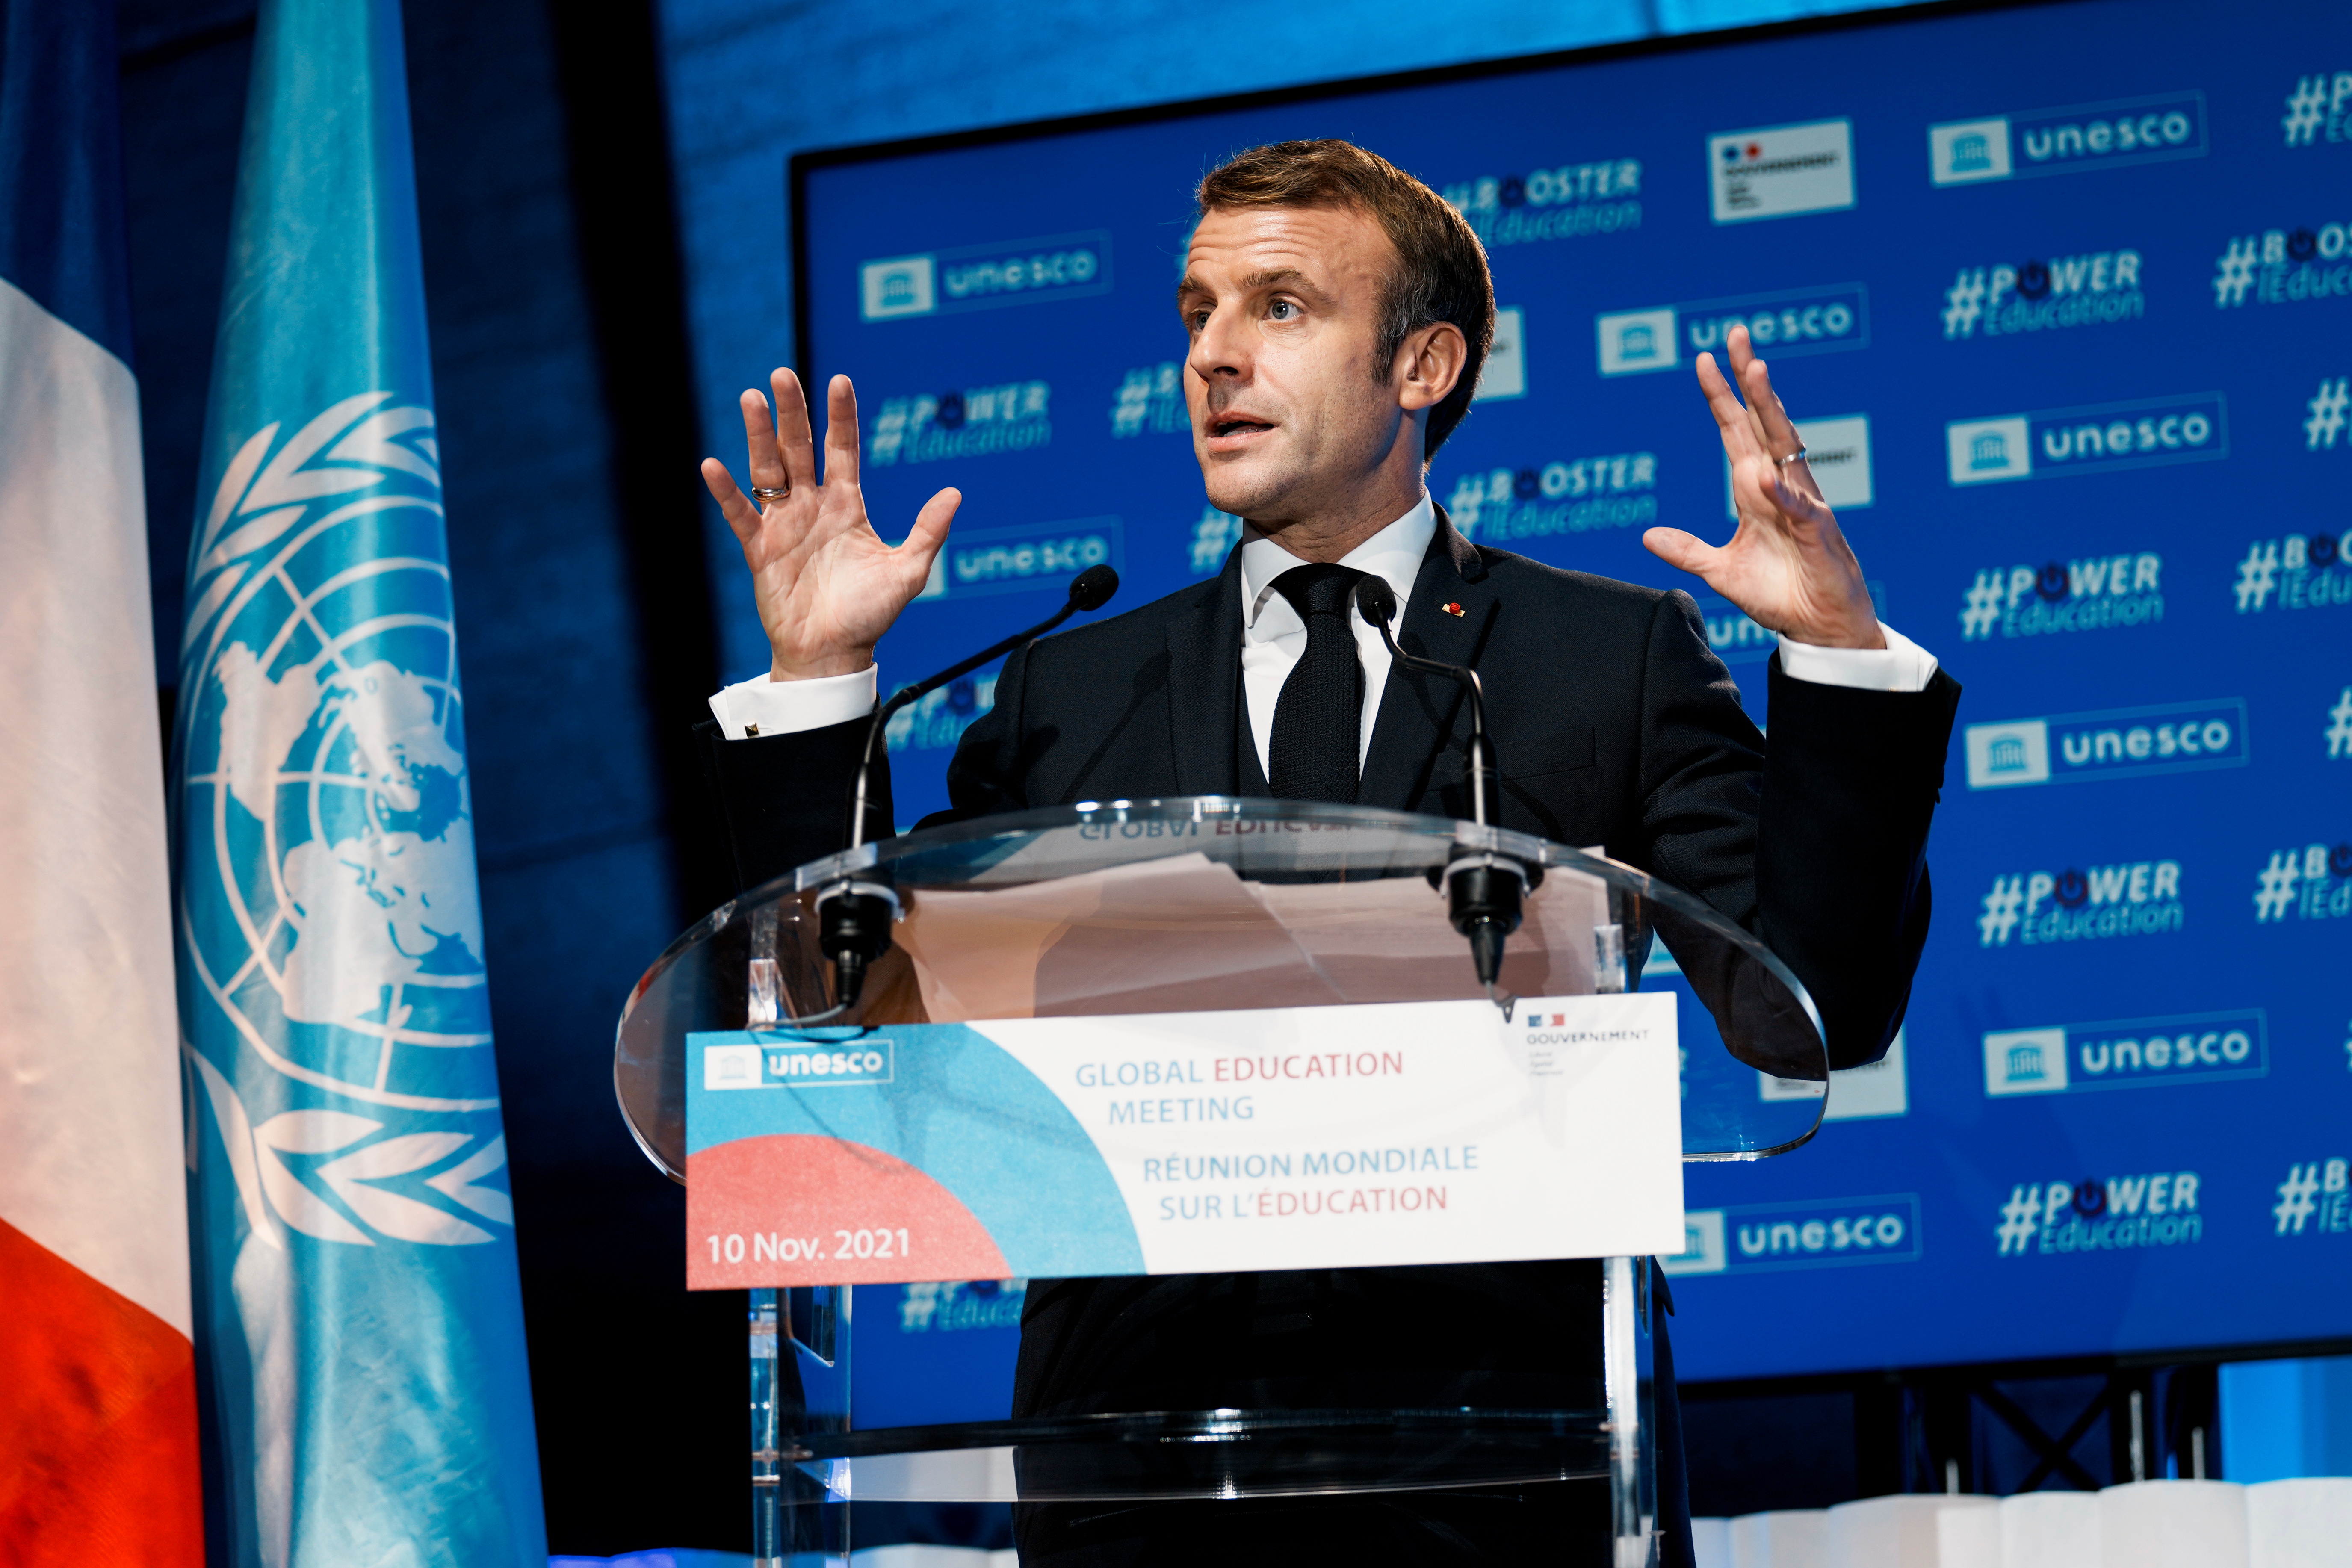 El presidente francés, Emmanuel Macron, durante una sesión de la Unesco, en París (Reuters)